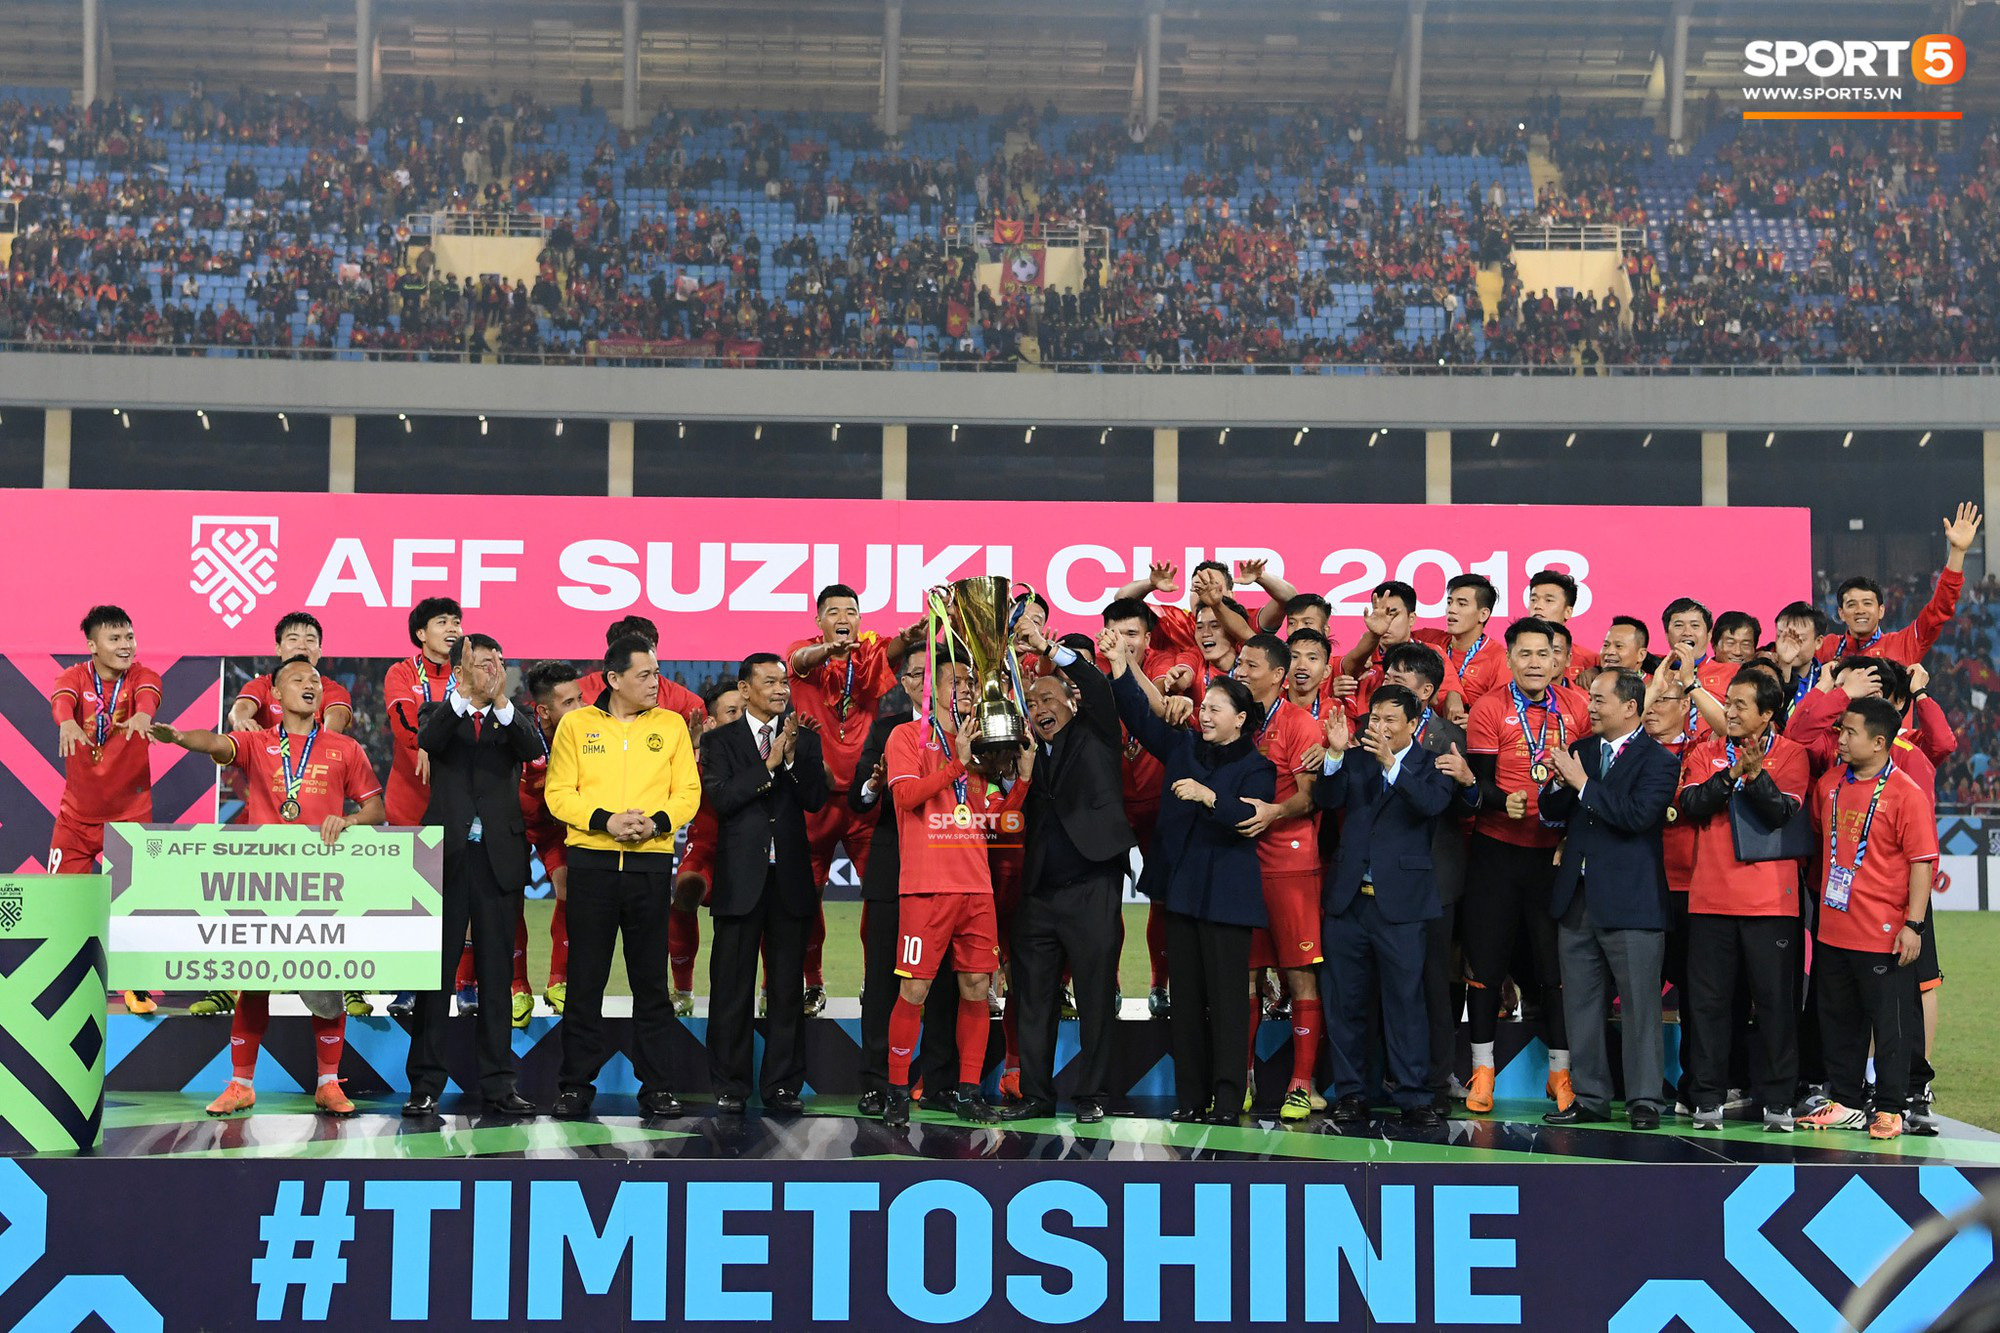 Đoàn kết là sức mạnh nhưng thúc đẩy chủ nghĩa cá nhân tích cực mới giúp bóng đá Việt đến World Cup - Ảnh 1.